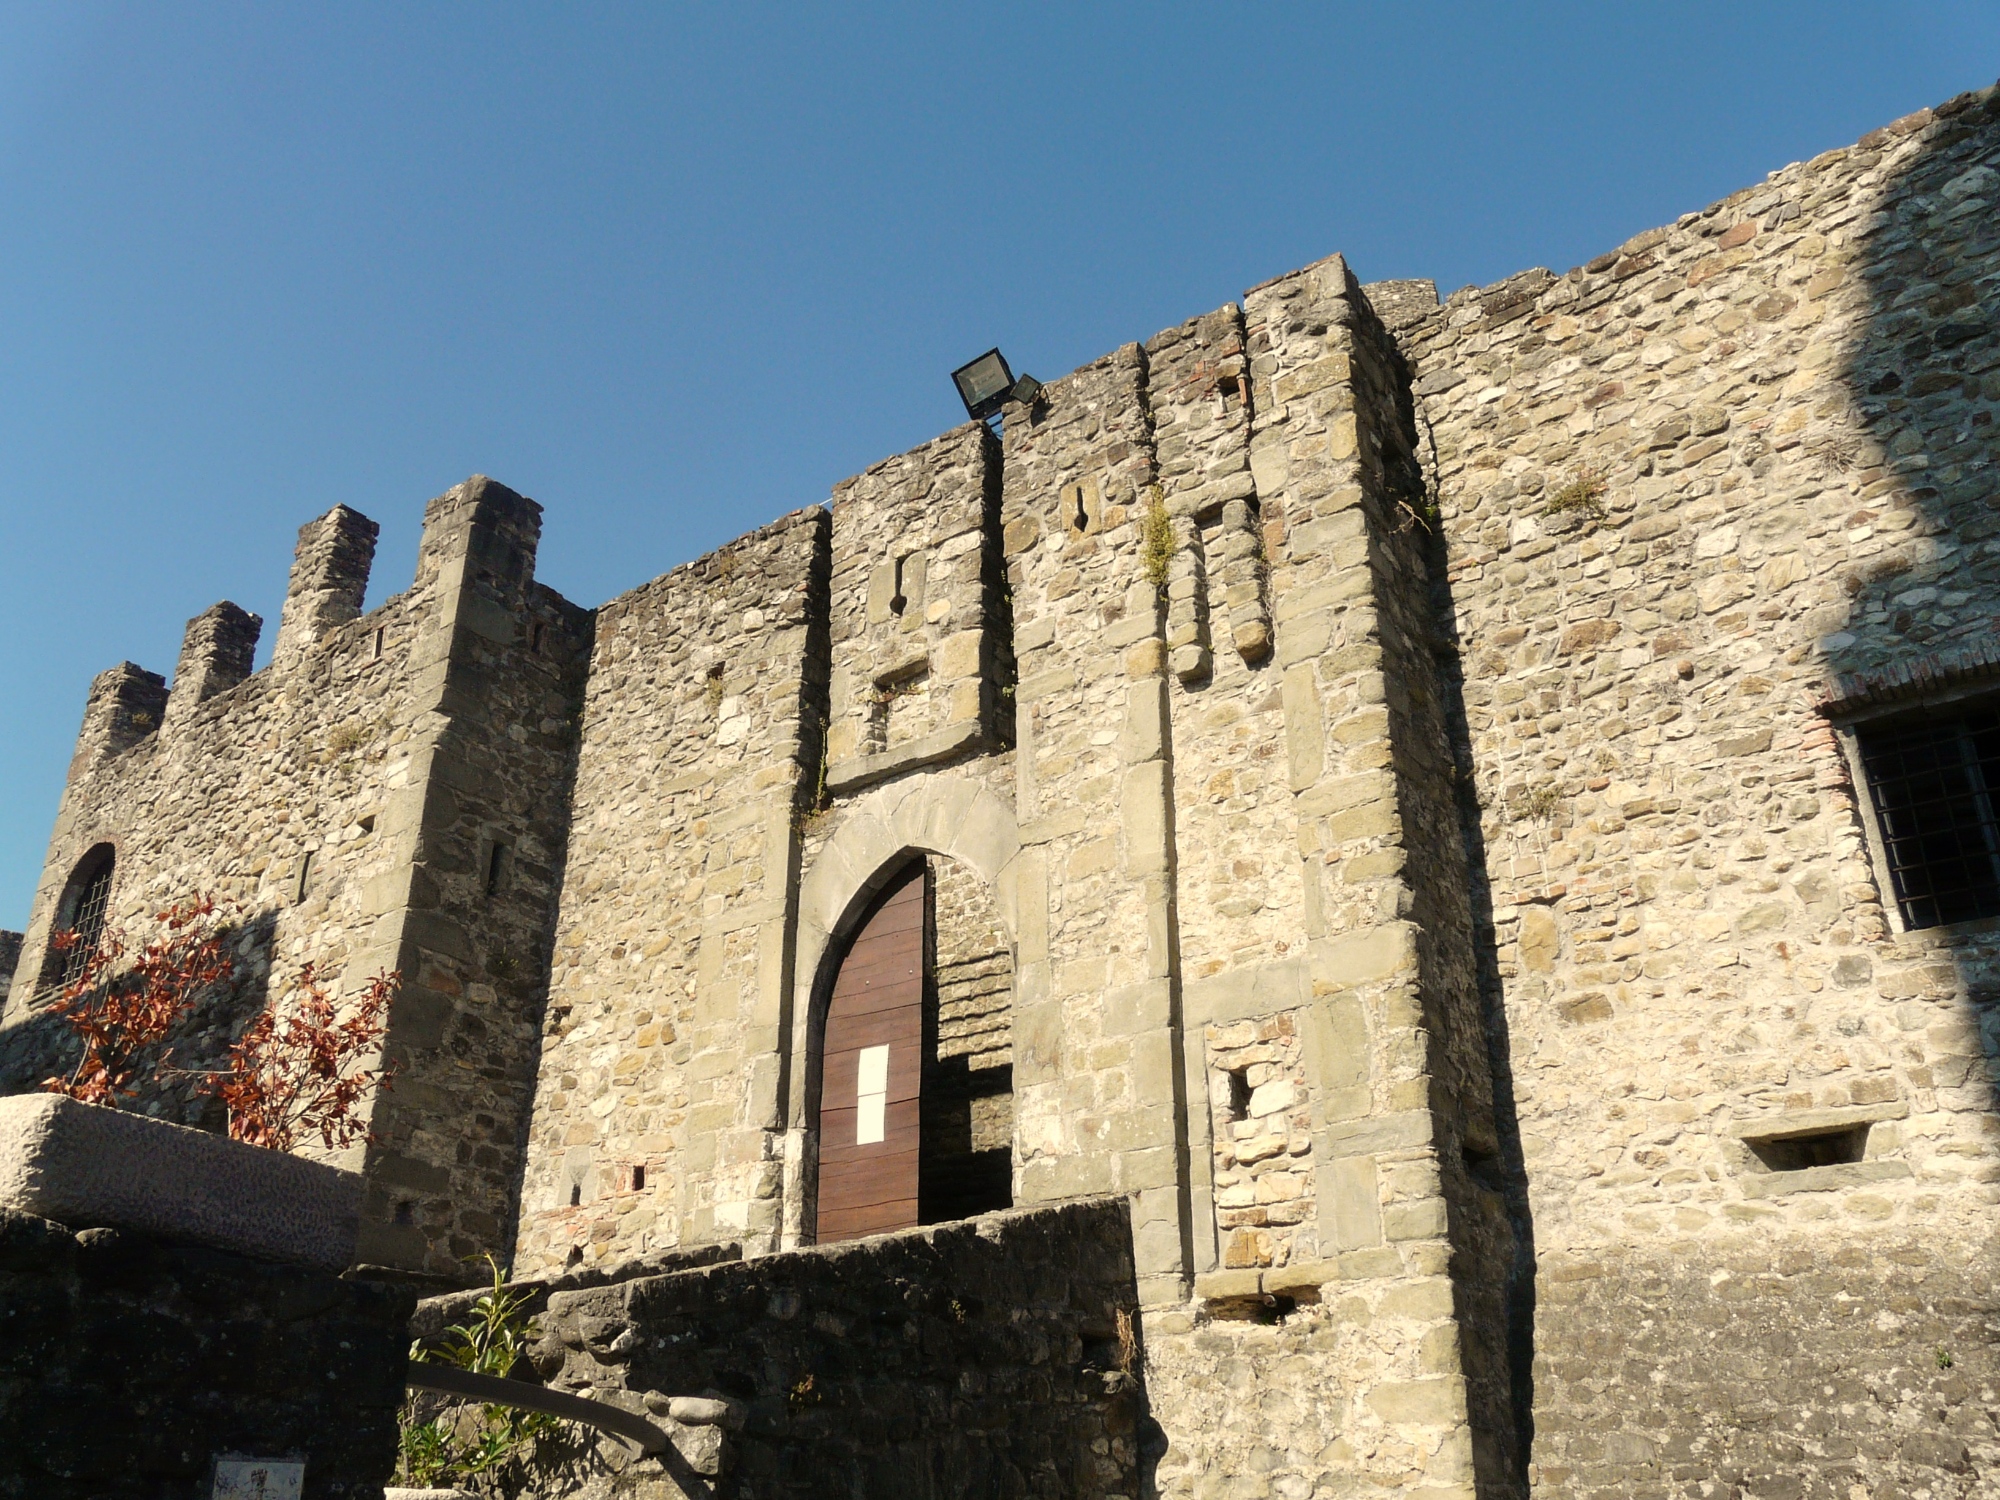 Villafranca in der Lunigiana, Schloss von Malgrate